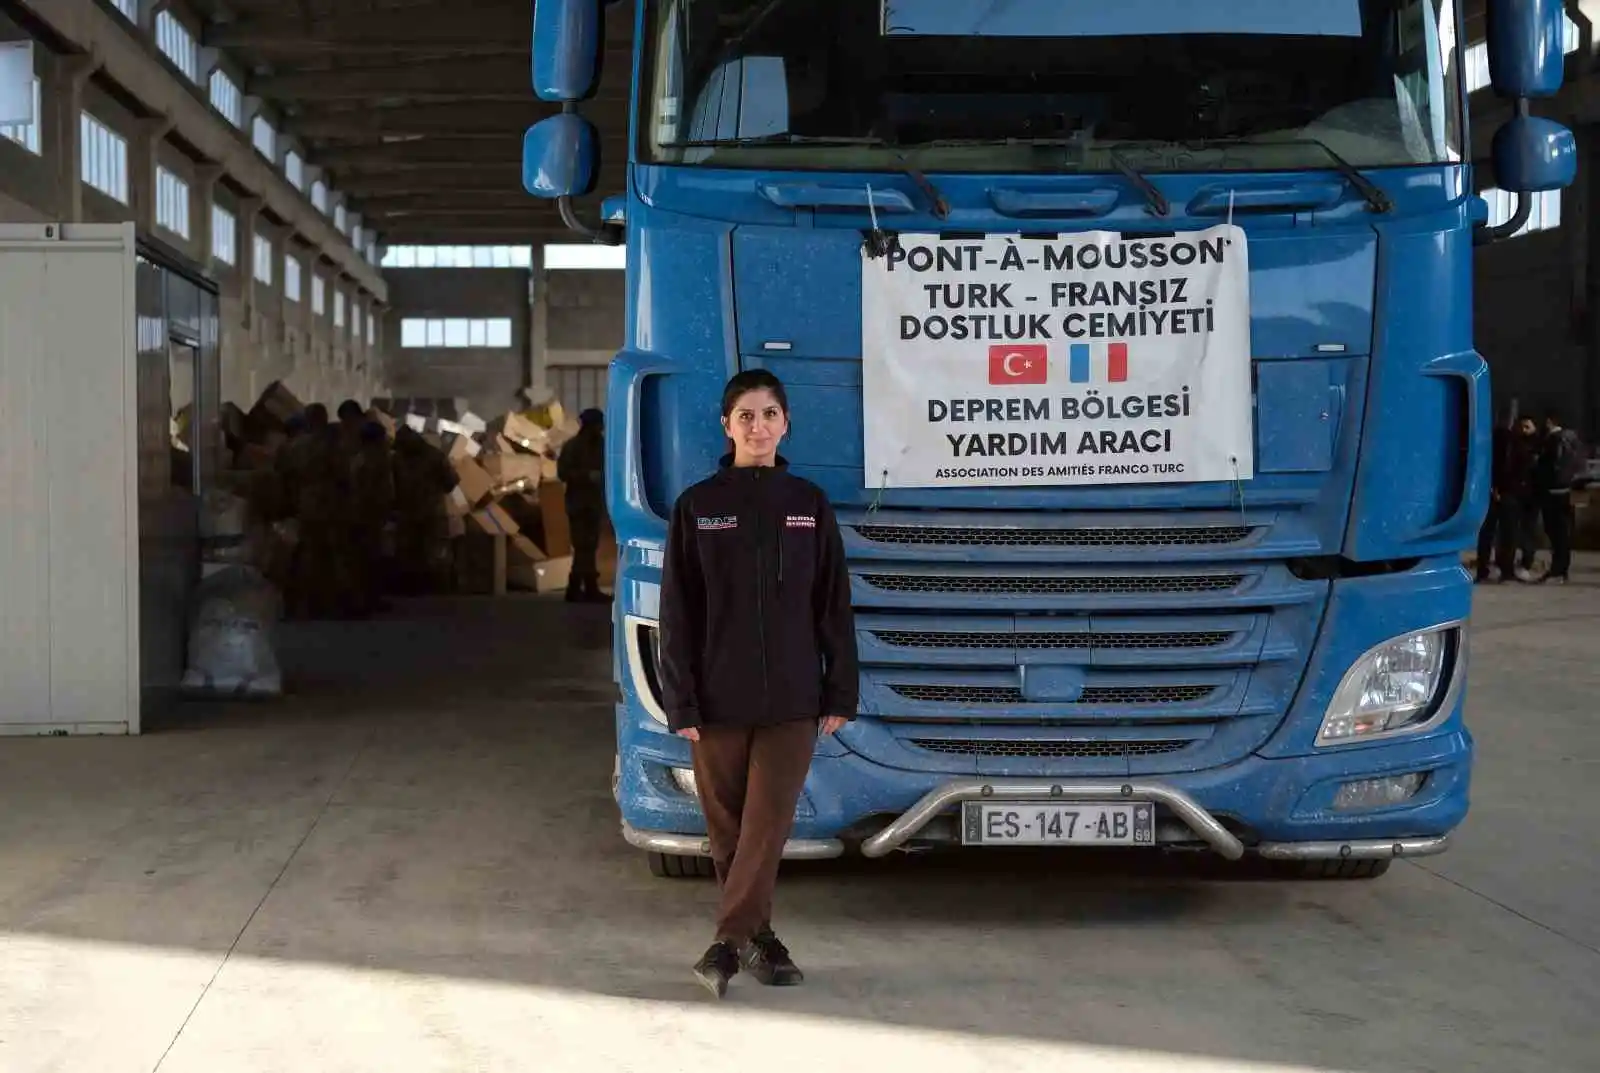 Fransa'dan kendi tırıyla yardım getiren 24 yaşındaki kadın Kahramanmaraş'a ulaştı
